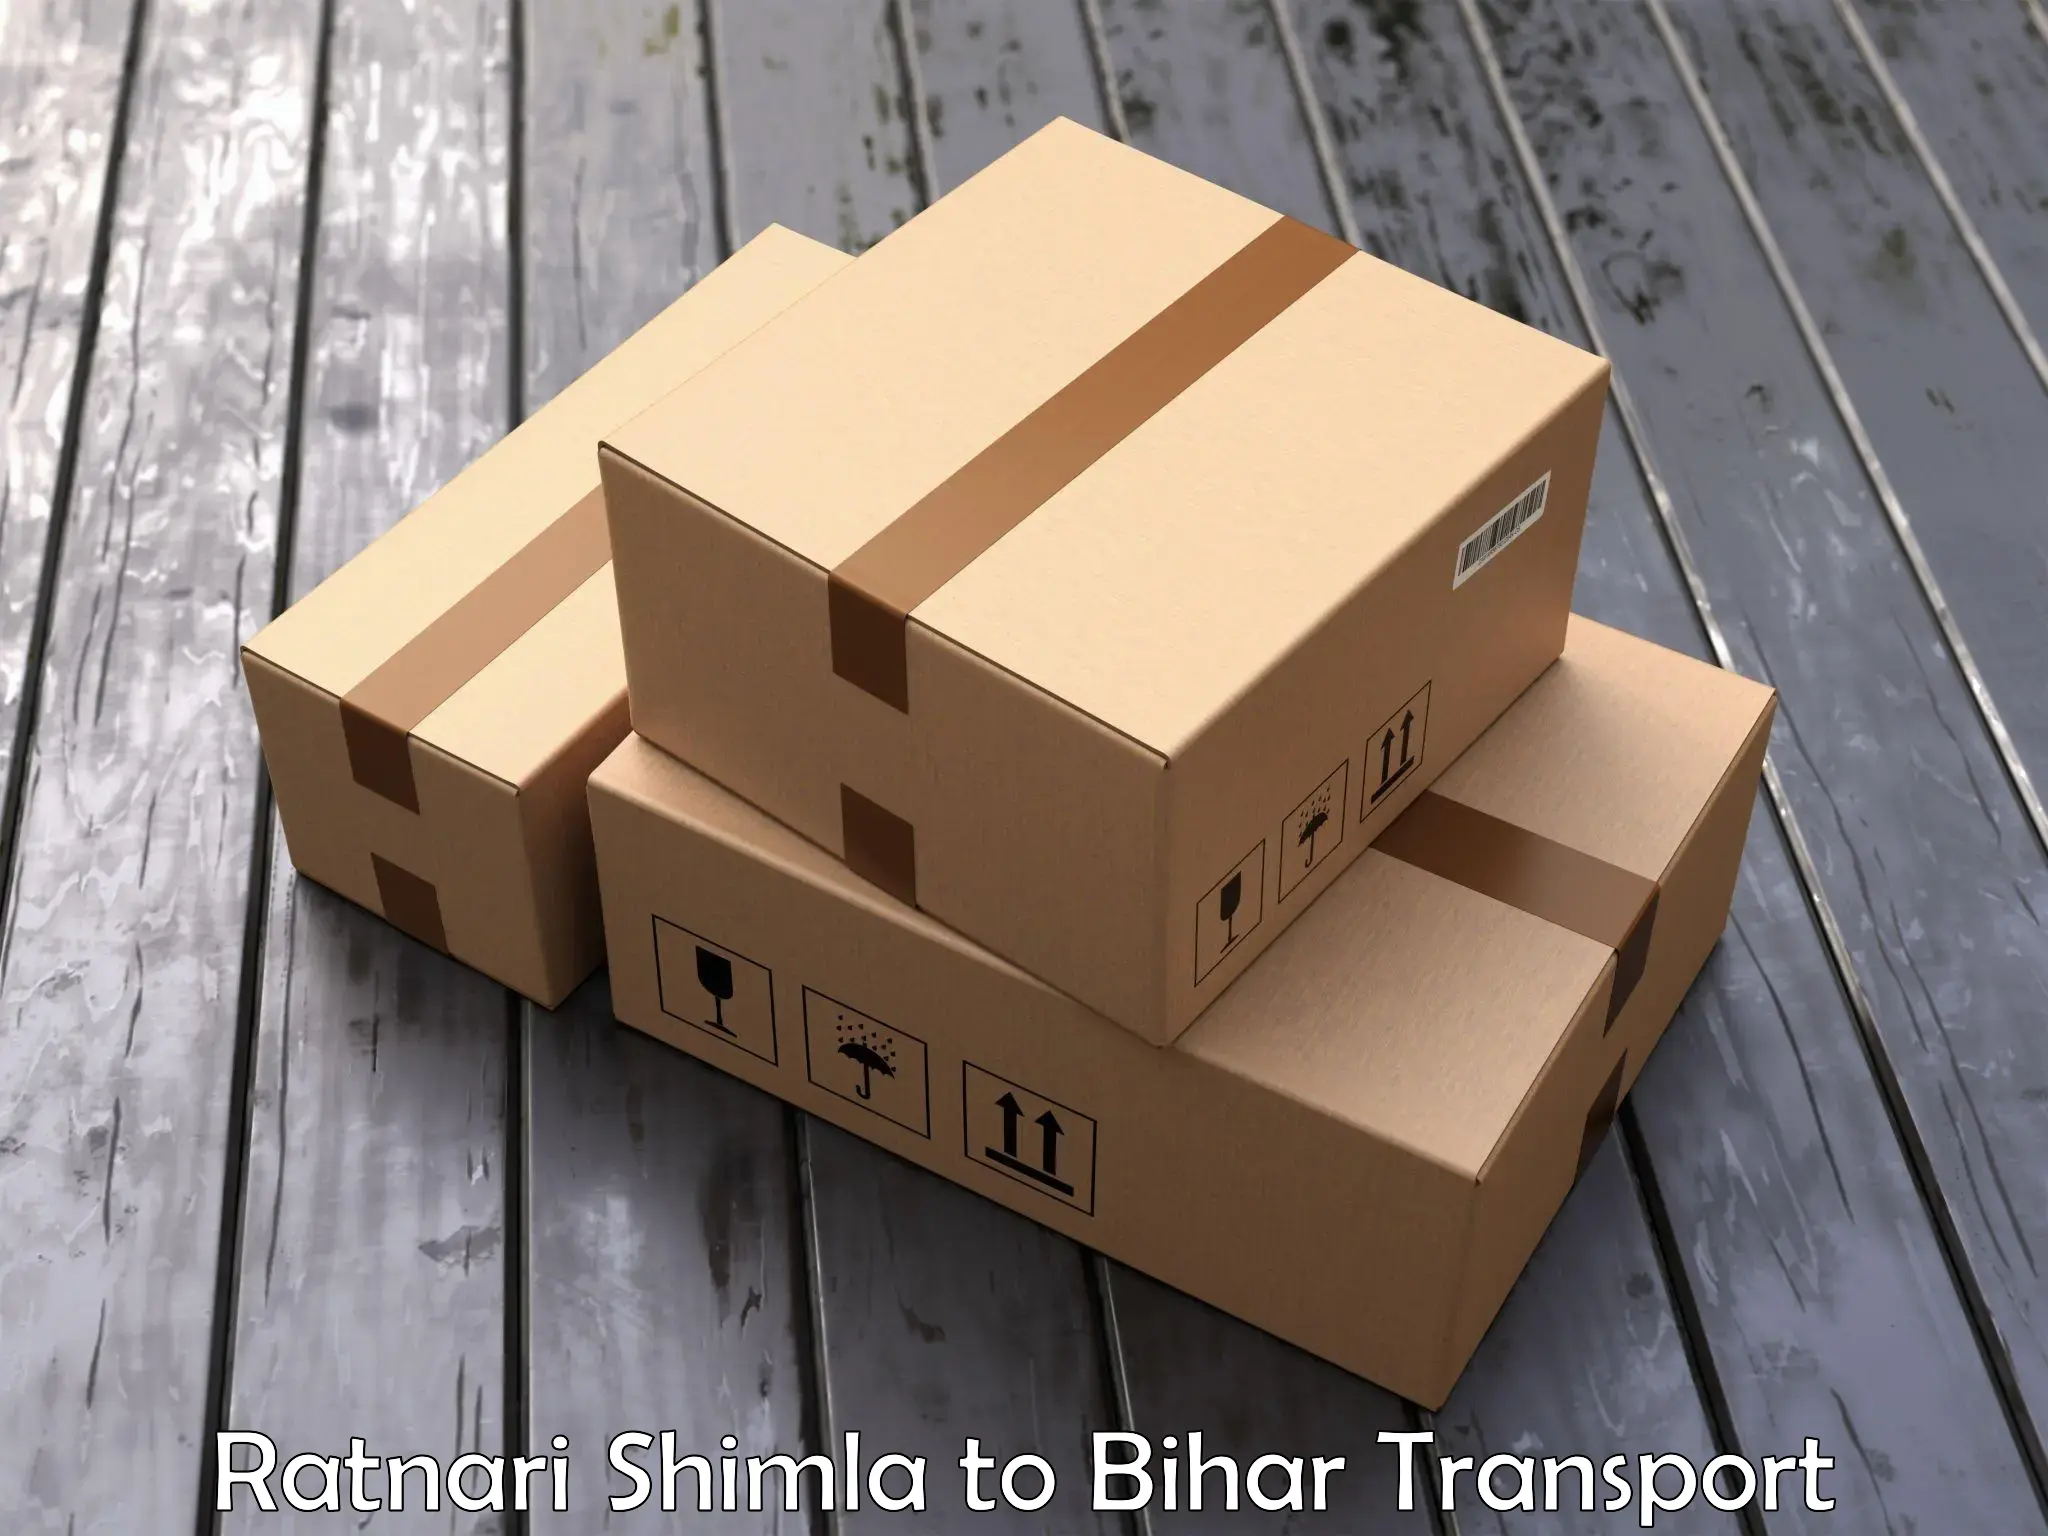 Express transport services Ratnari Shimla to Saran